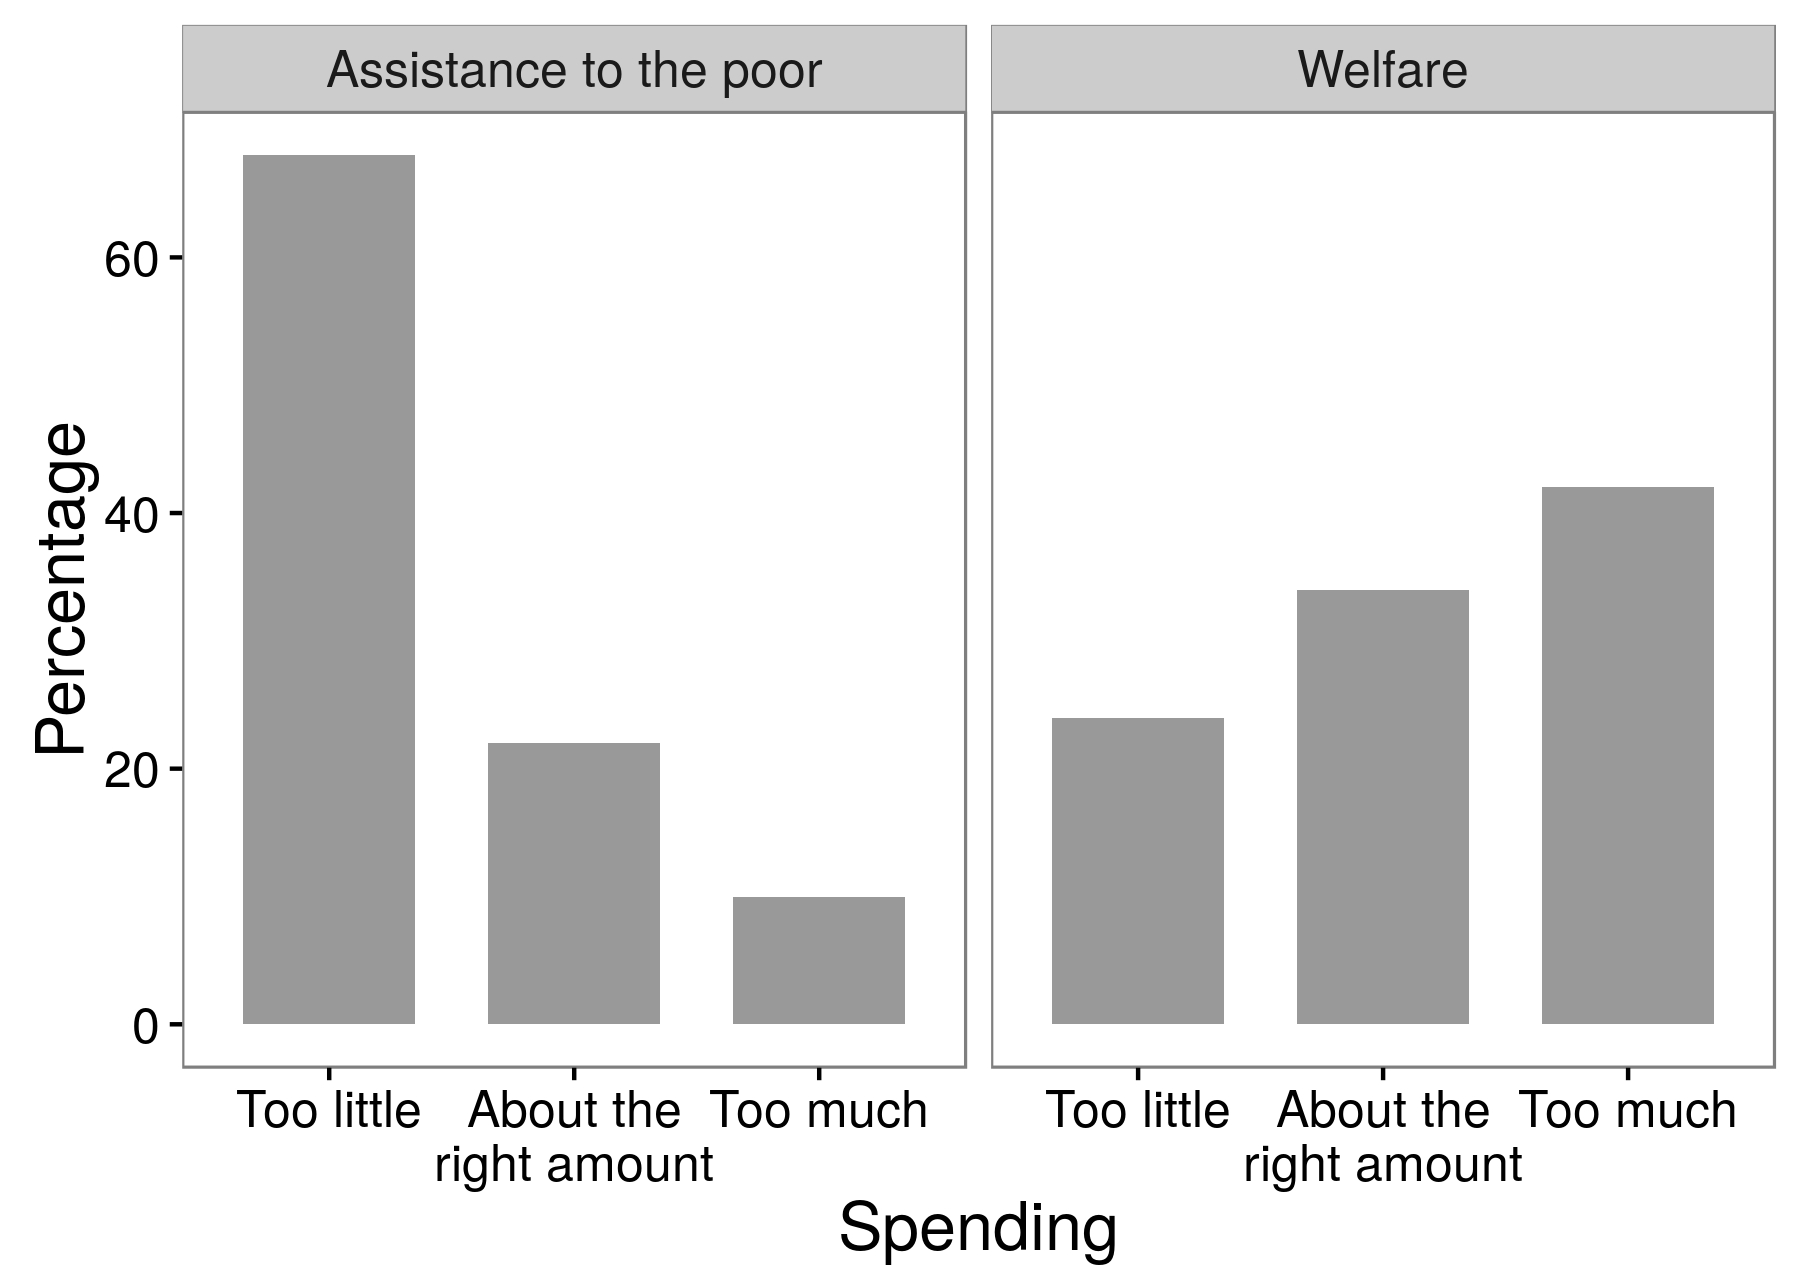 Slika 3.4: Rezultati ankete istraživanja pokazuju da ispitanici mnogo podržavaju pomoć siromašnima od socijalne pomoći. Ovo je primjer efekta korištenja pitanja, pri čemu odgovori koje istraživači dobijaju zavise od tačno koje riječi koriste u svojim pitanjima. Prilagođeno od Hubera i Pariza (2013), tabela A1.